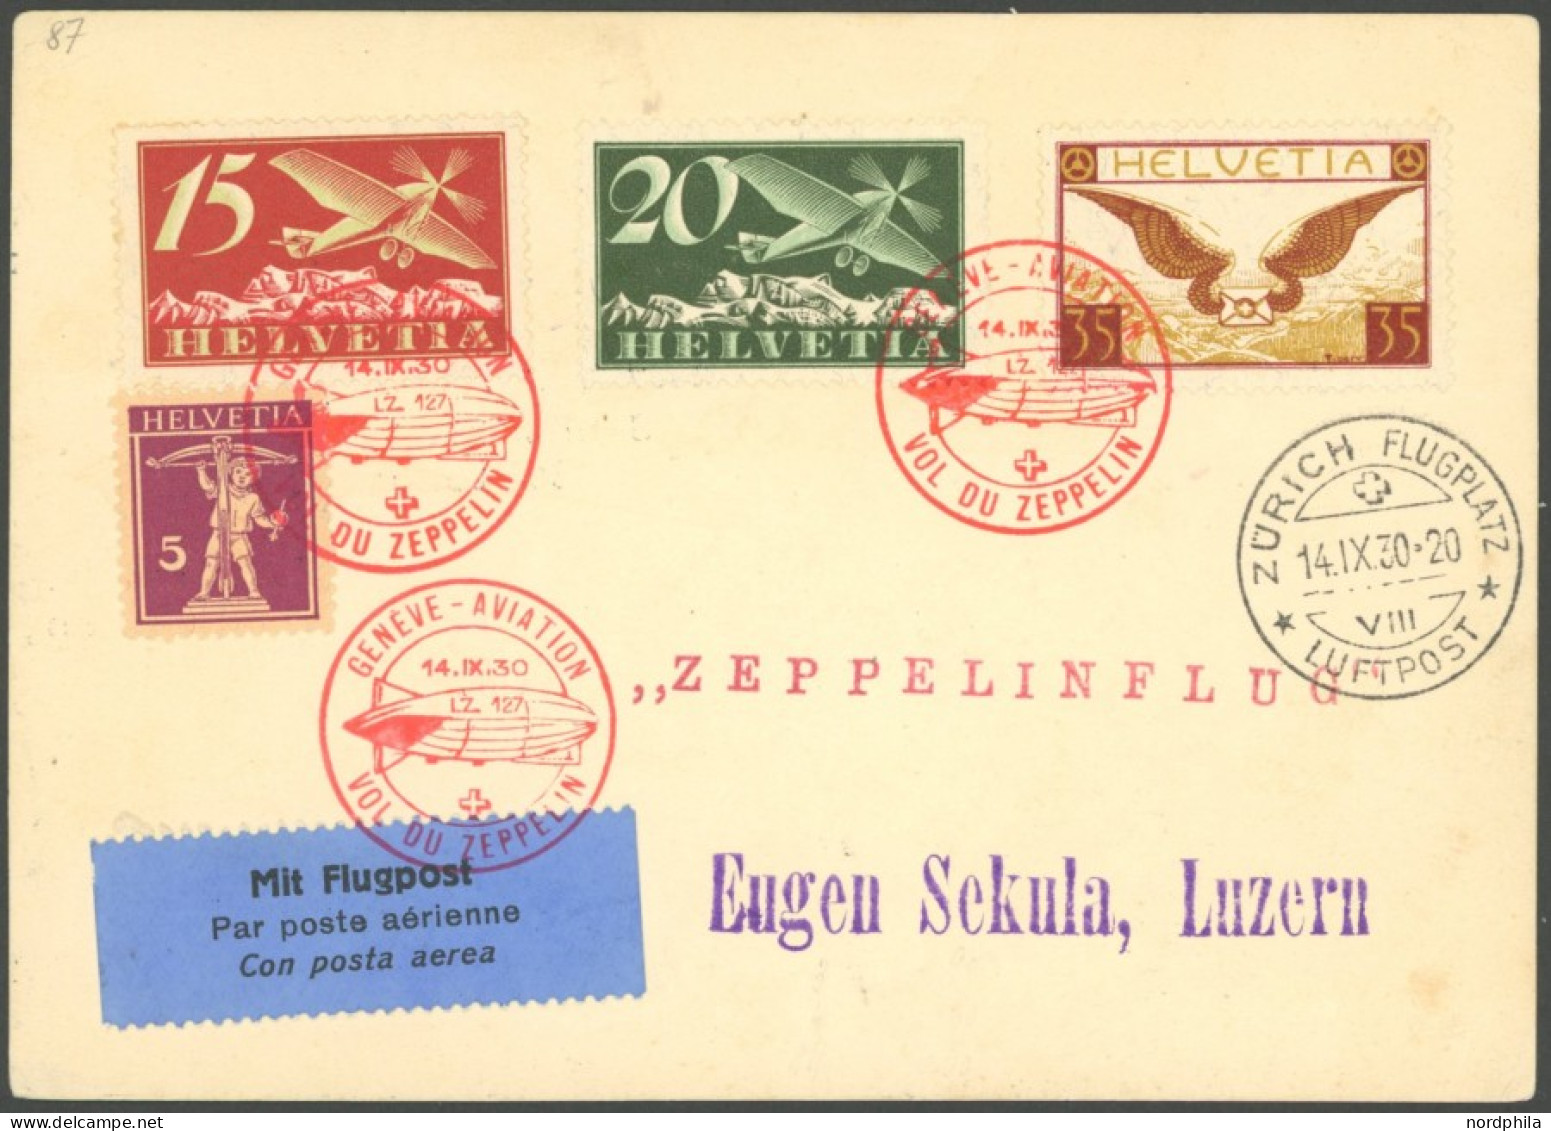 ZULEITUNGSPOST 86 BRIEF, Schweiz: 1930, Landungsfahrt Nach Genf, Sekula-Völkerbund Karte In Deutsch, Pracht - Luft- Und Zeppelinpost